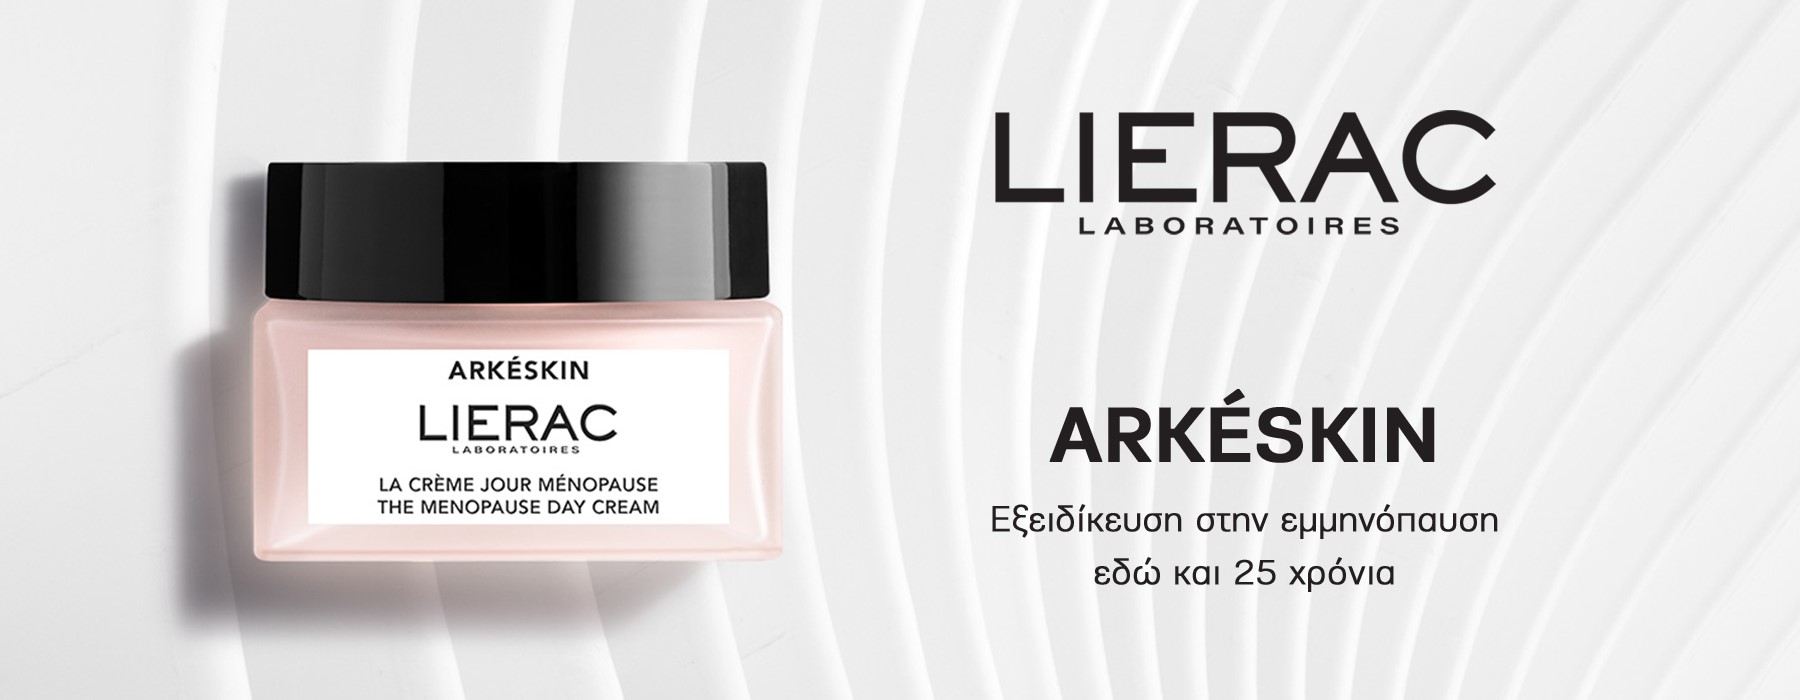 Lierac - Arkeskin